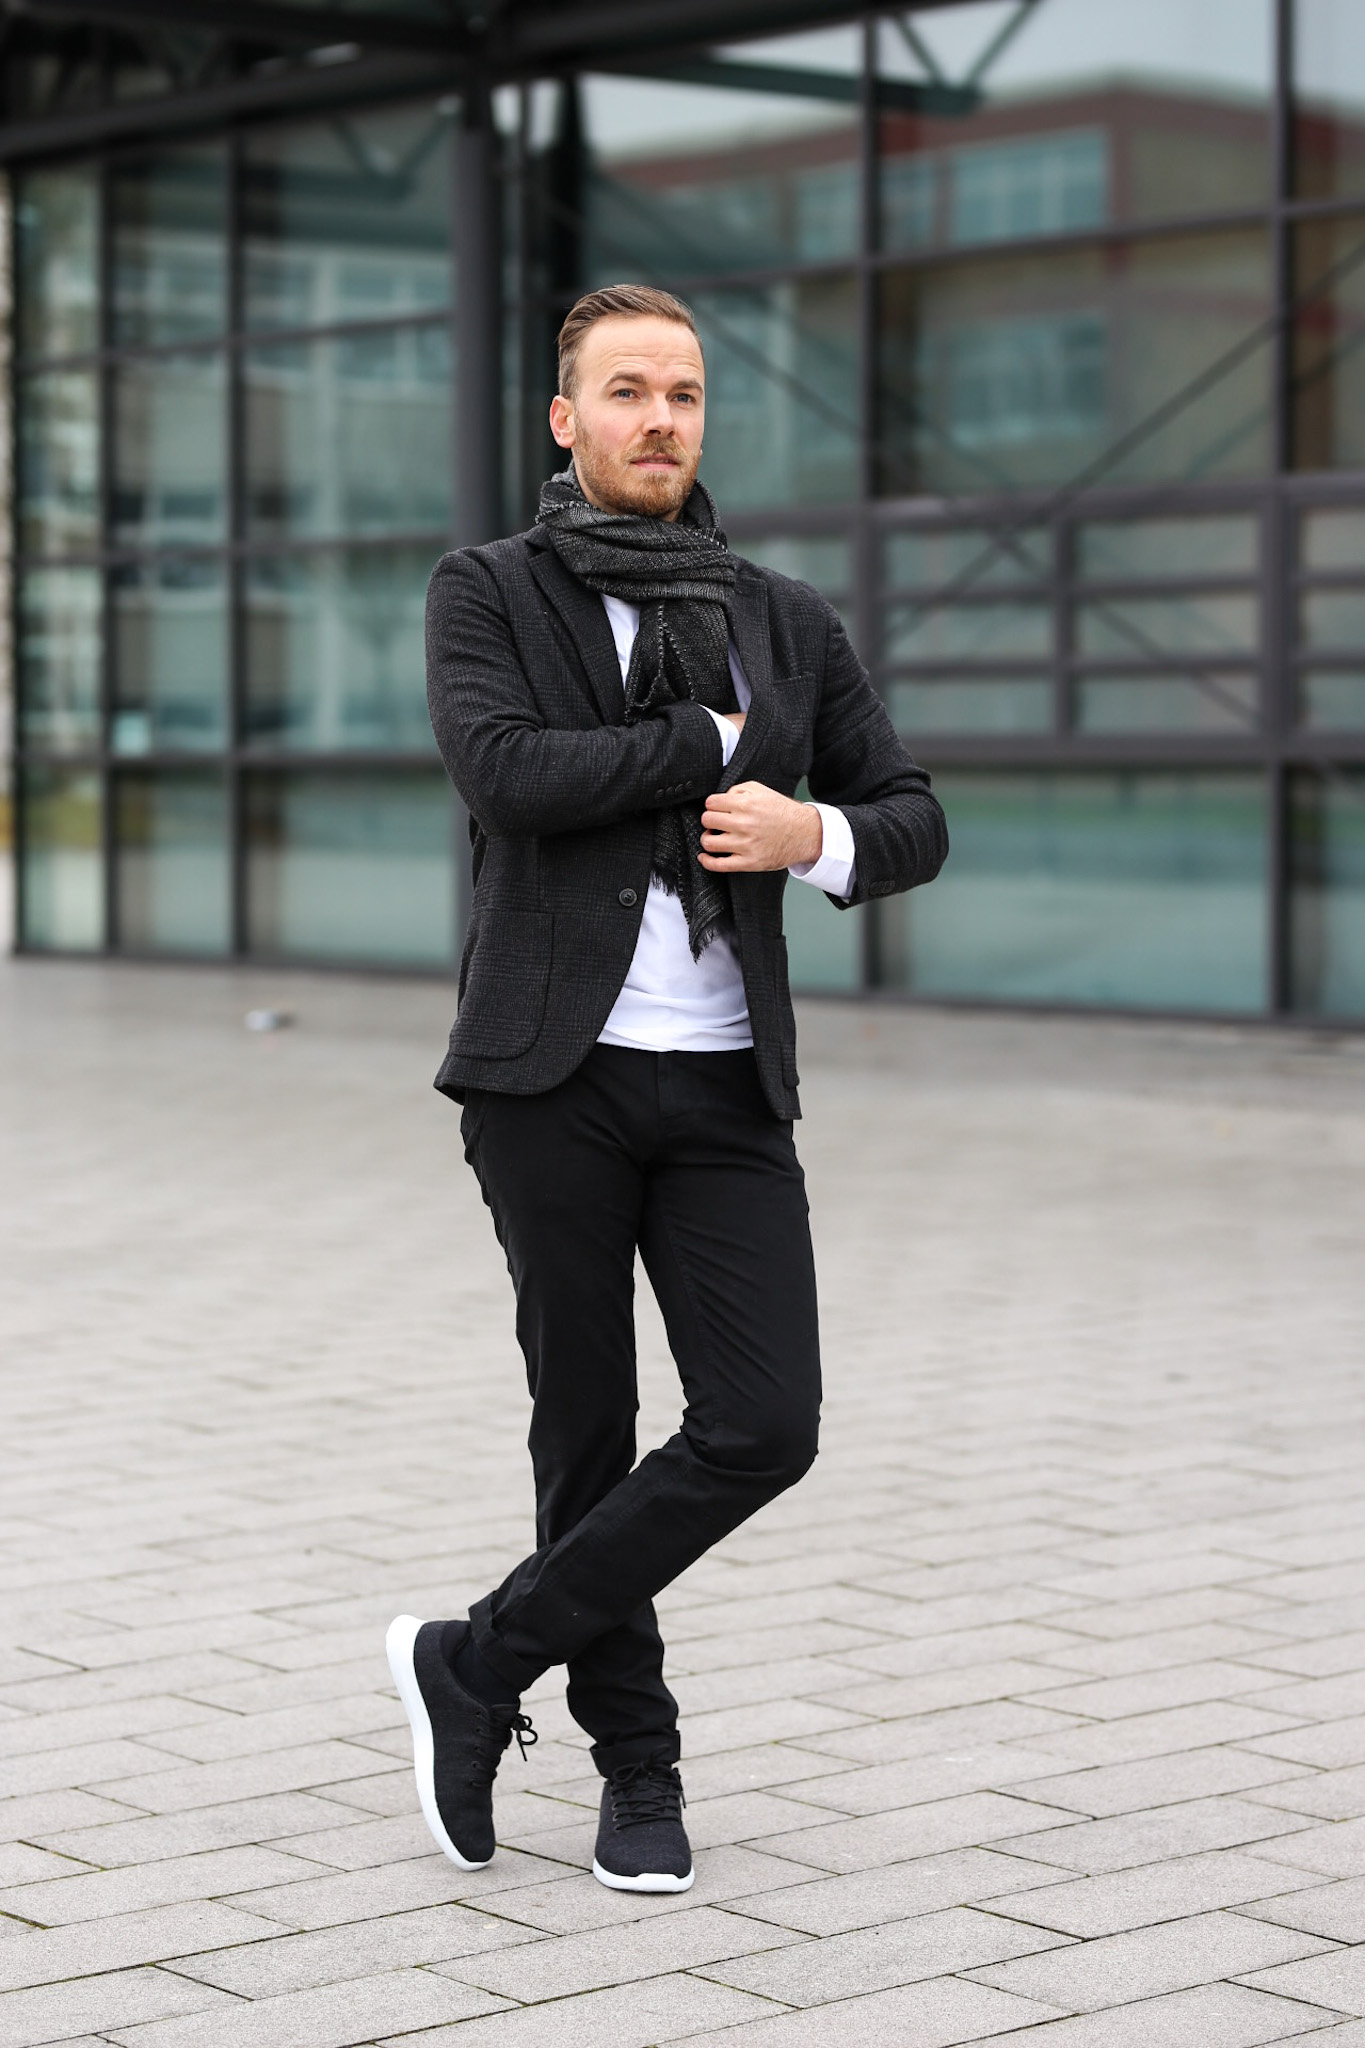 Männer Outfit Inspiration für das neue Jahr - 3 Looks - 3 Styles Blogger Bernd hower berndhower Blog fashion männer herrenmode mode 